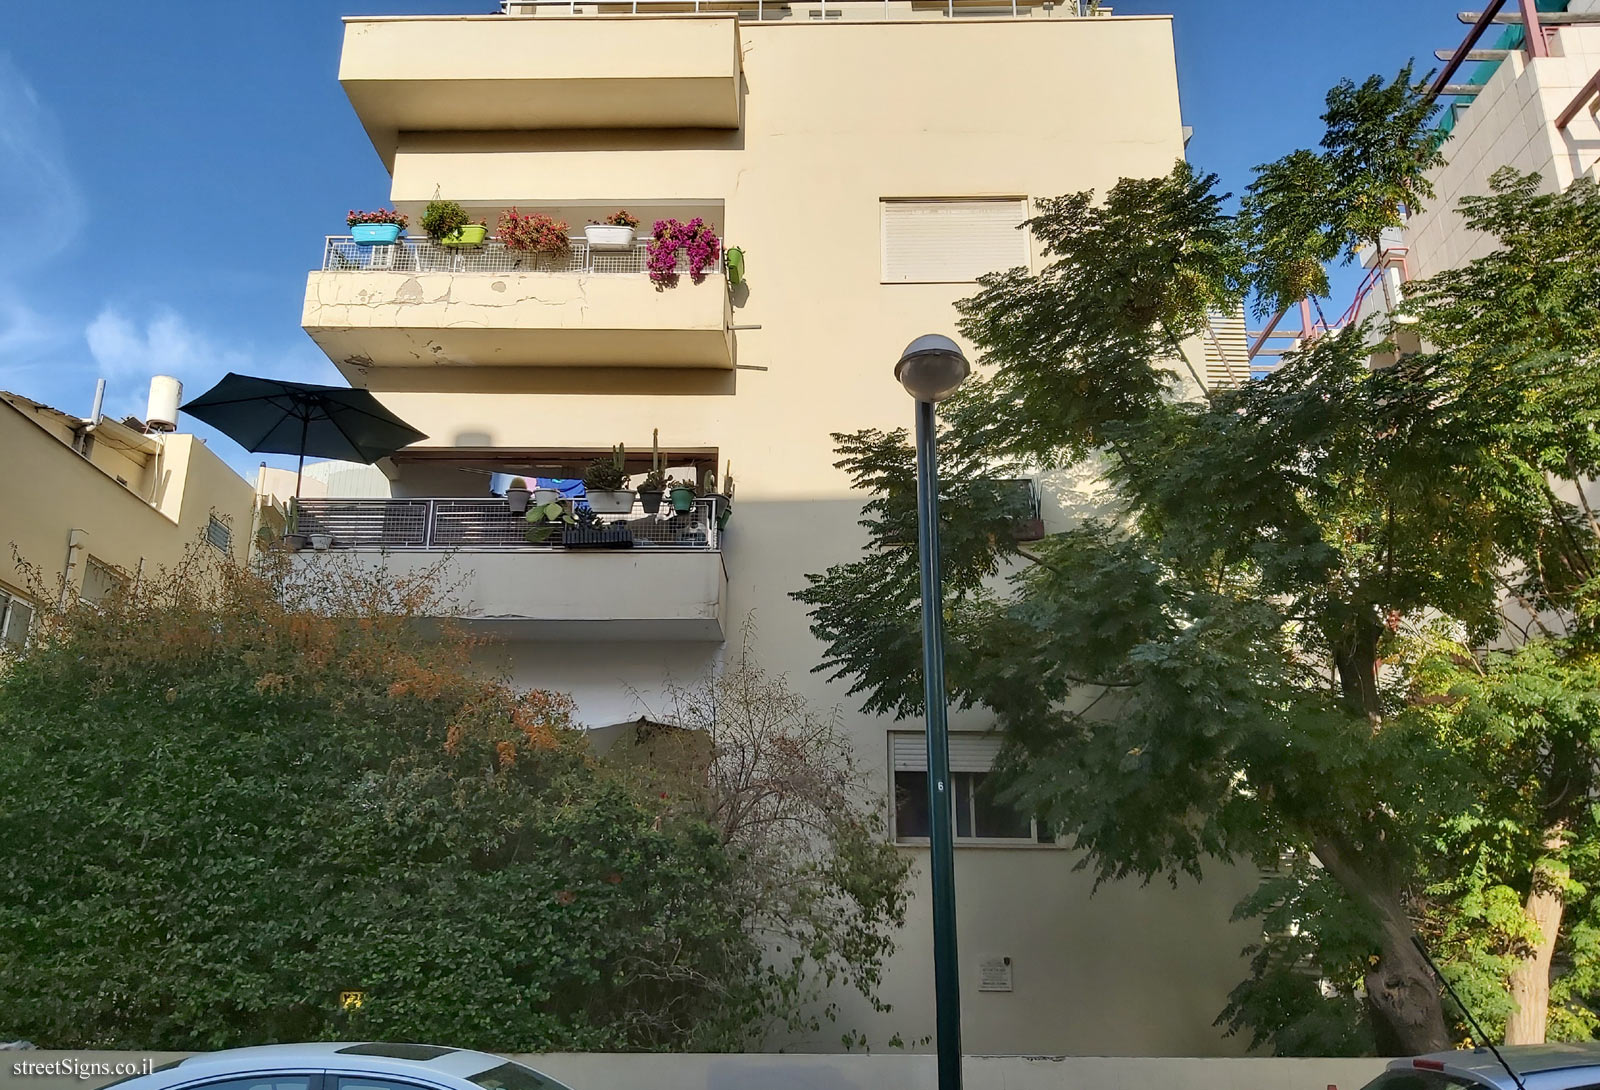 The house of Shmuel Bunim - Graets St 9, Tel Aviv-Yafo, Israel